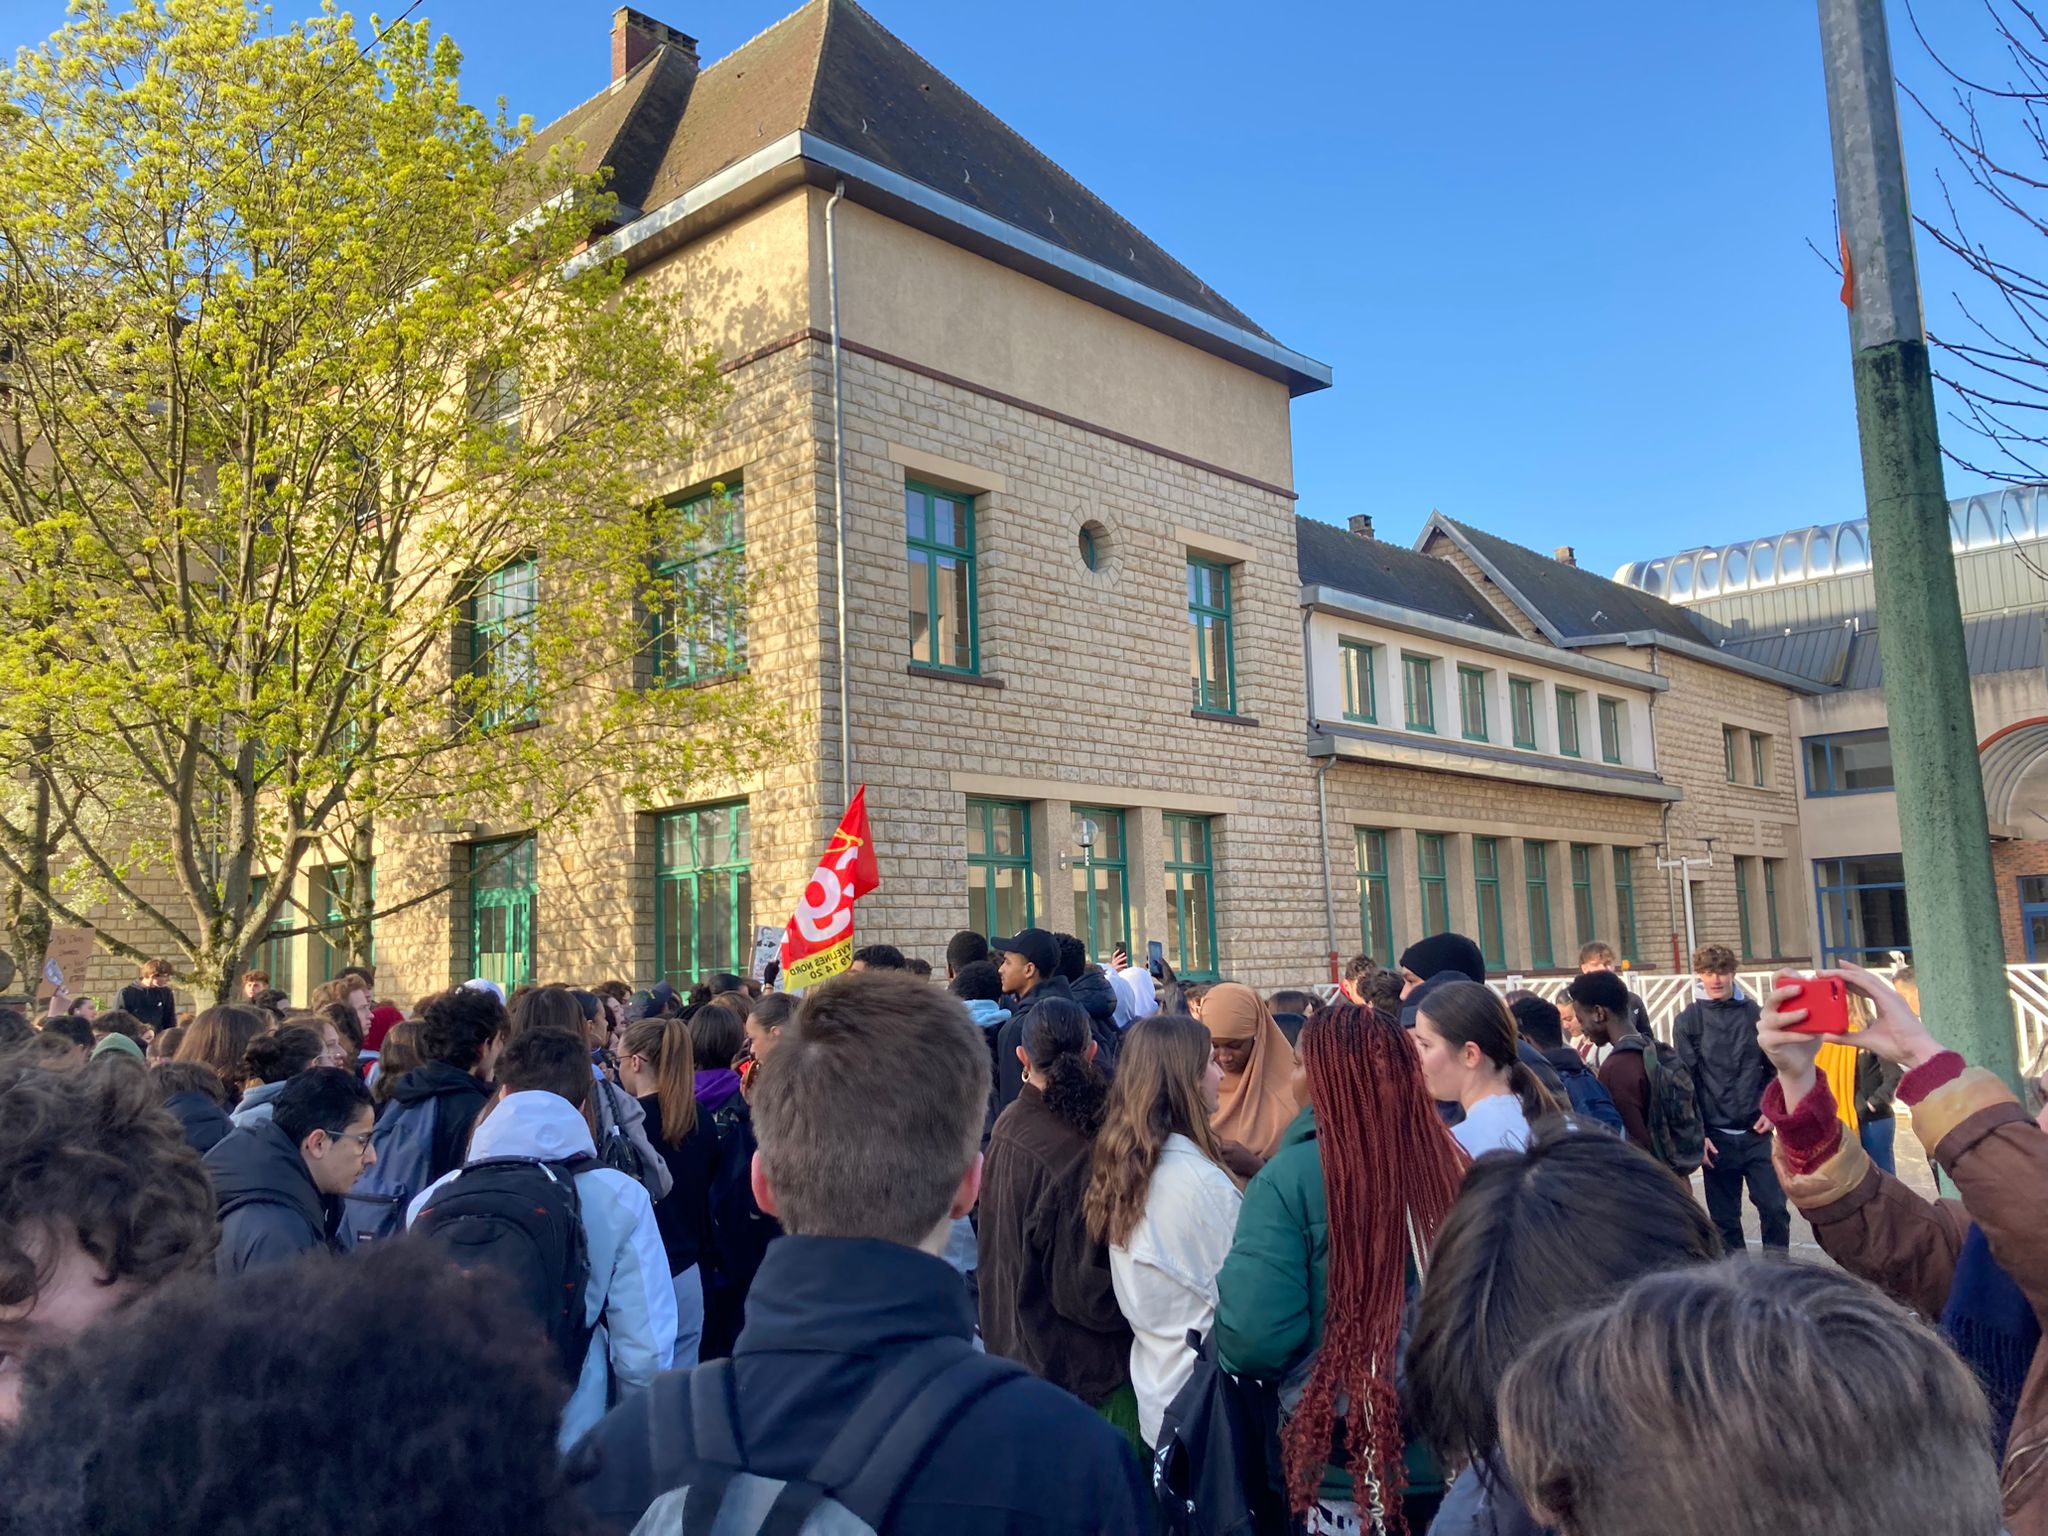 Conflans Sainte-Honorine : de nombreux soutiens aux côtés des lycéens réprimés par la police